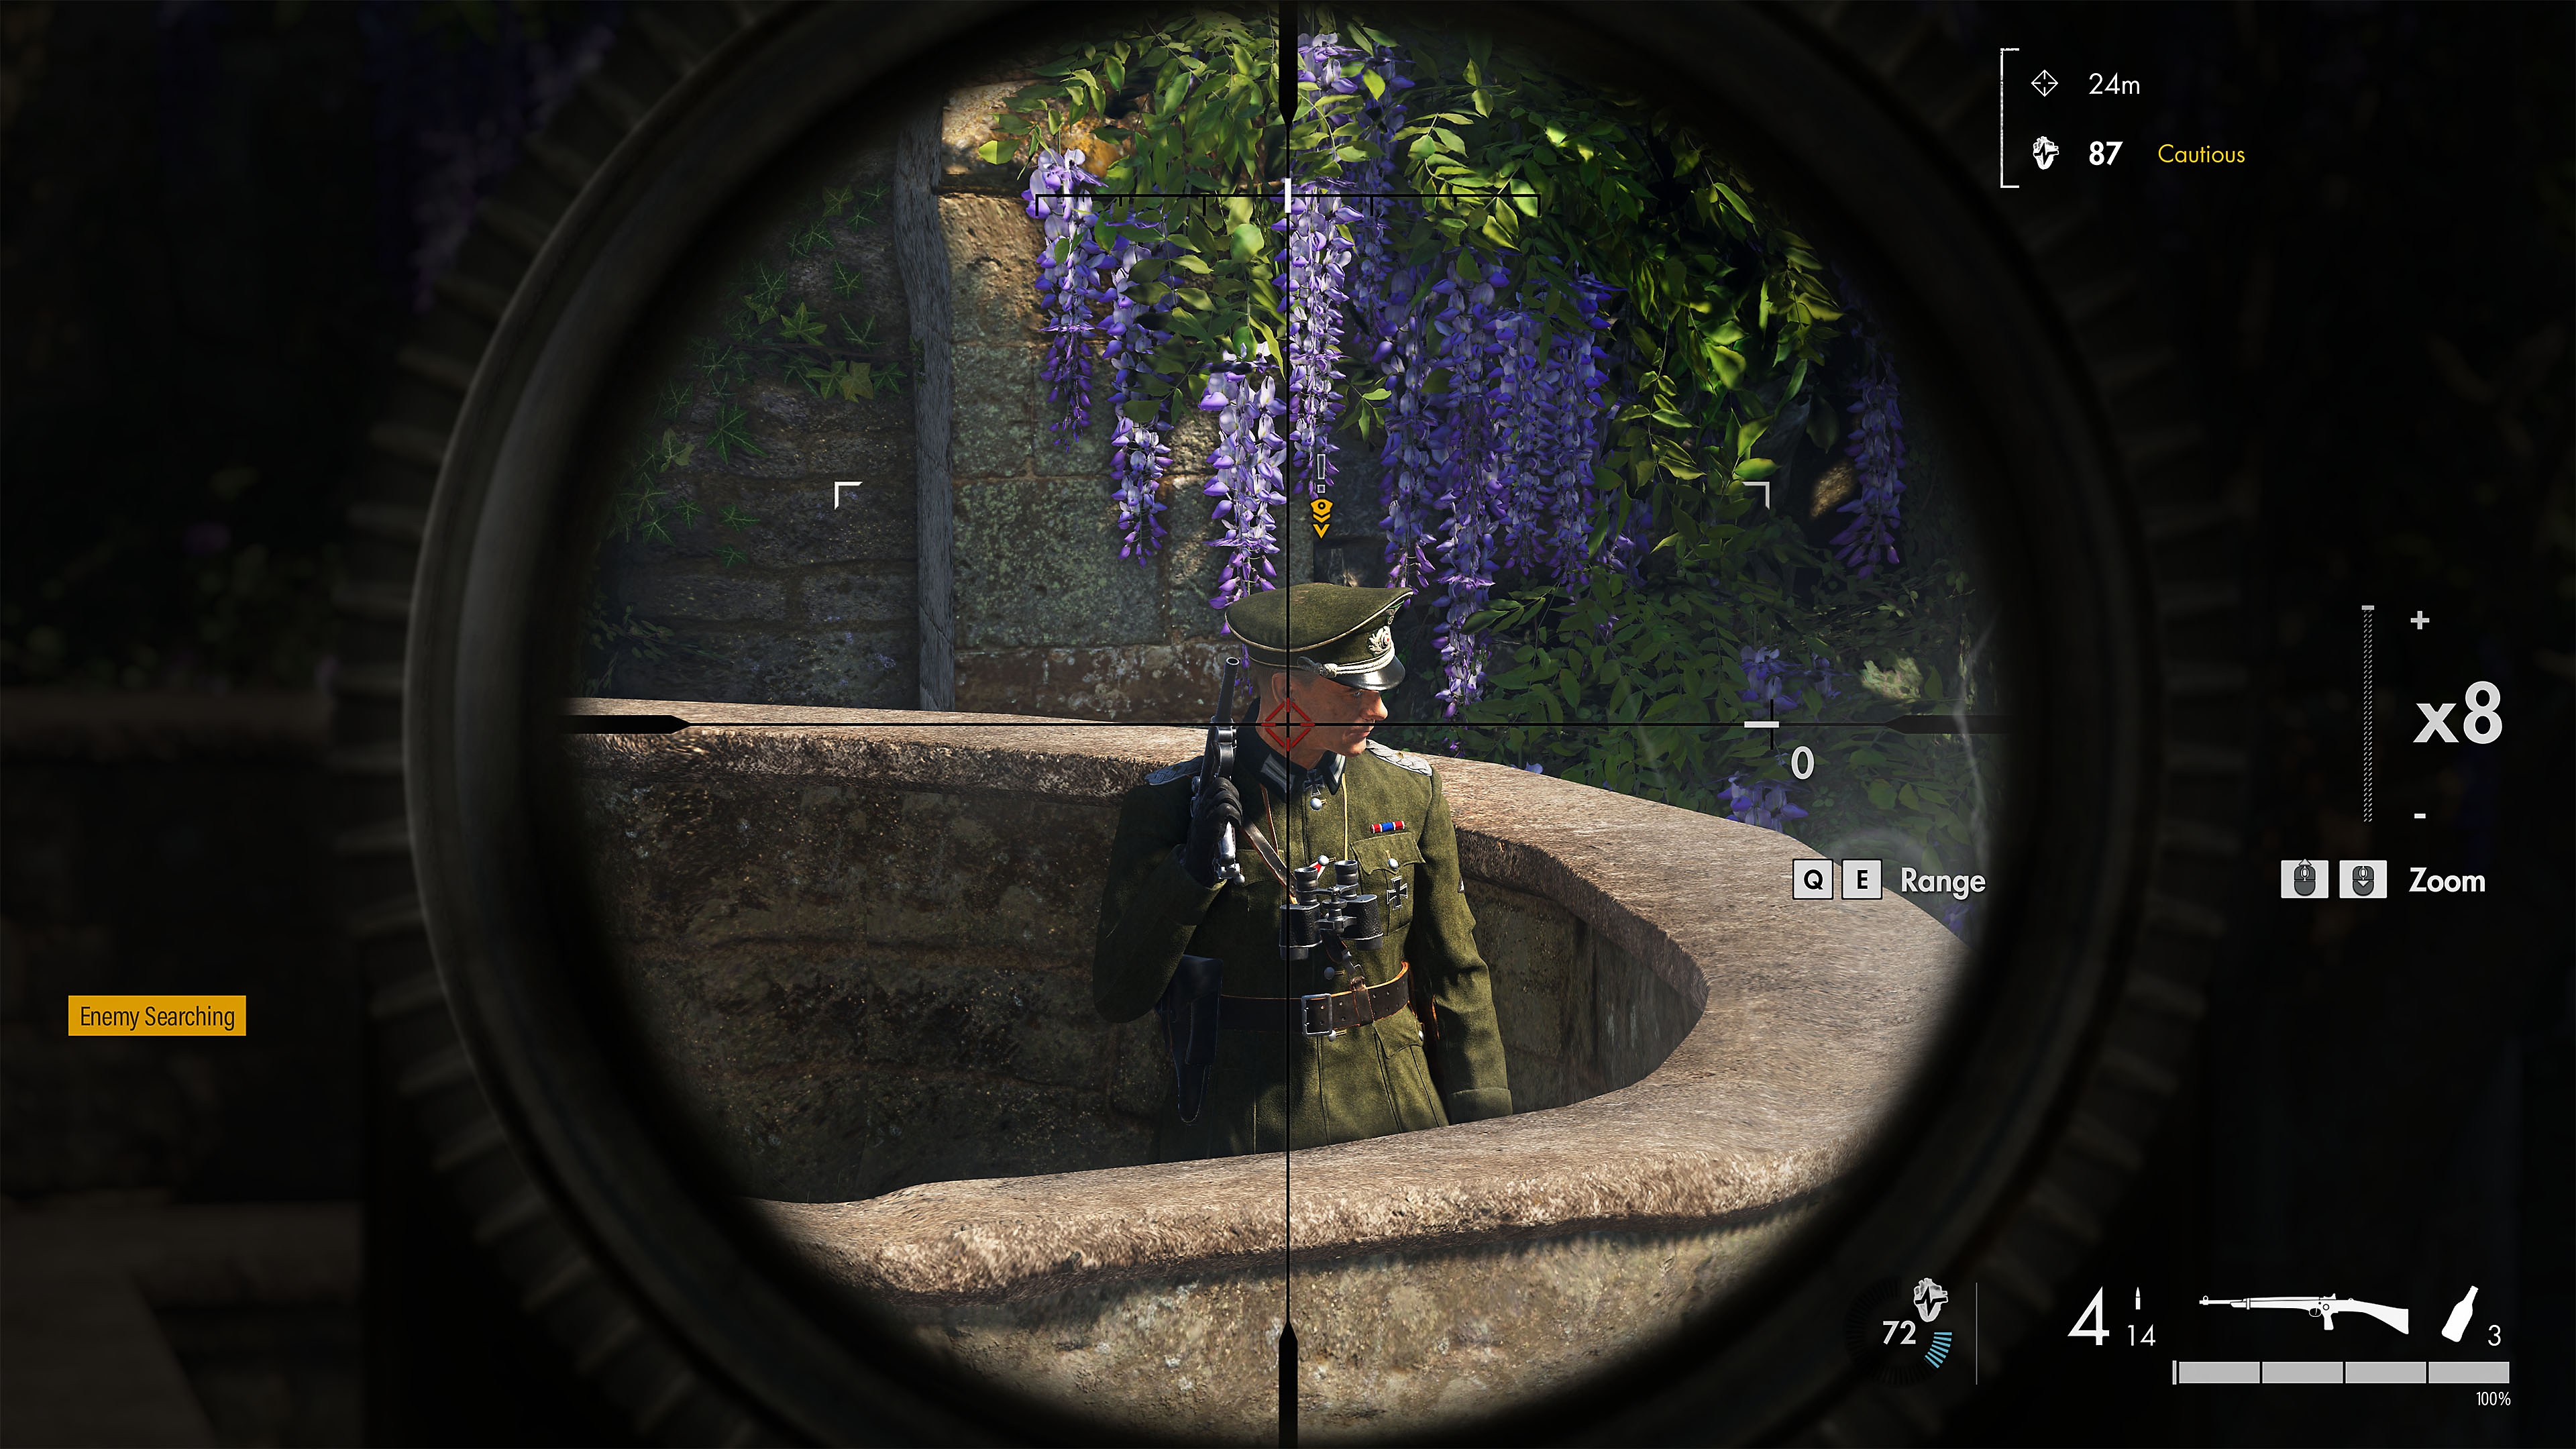 Istantanea della schermata di Sniper Elite 5 che mostra un nemico sotto tiro nel mirino di un fucile da cecchino